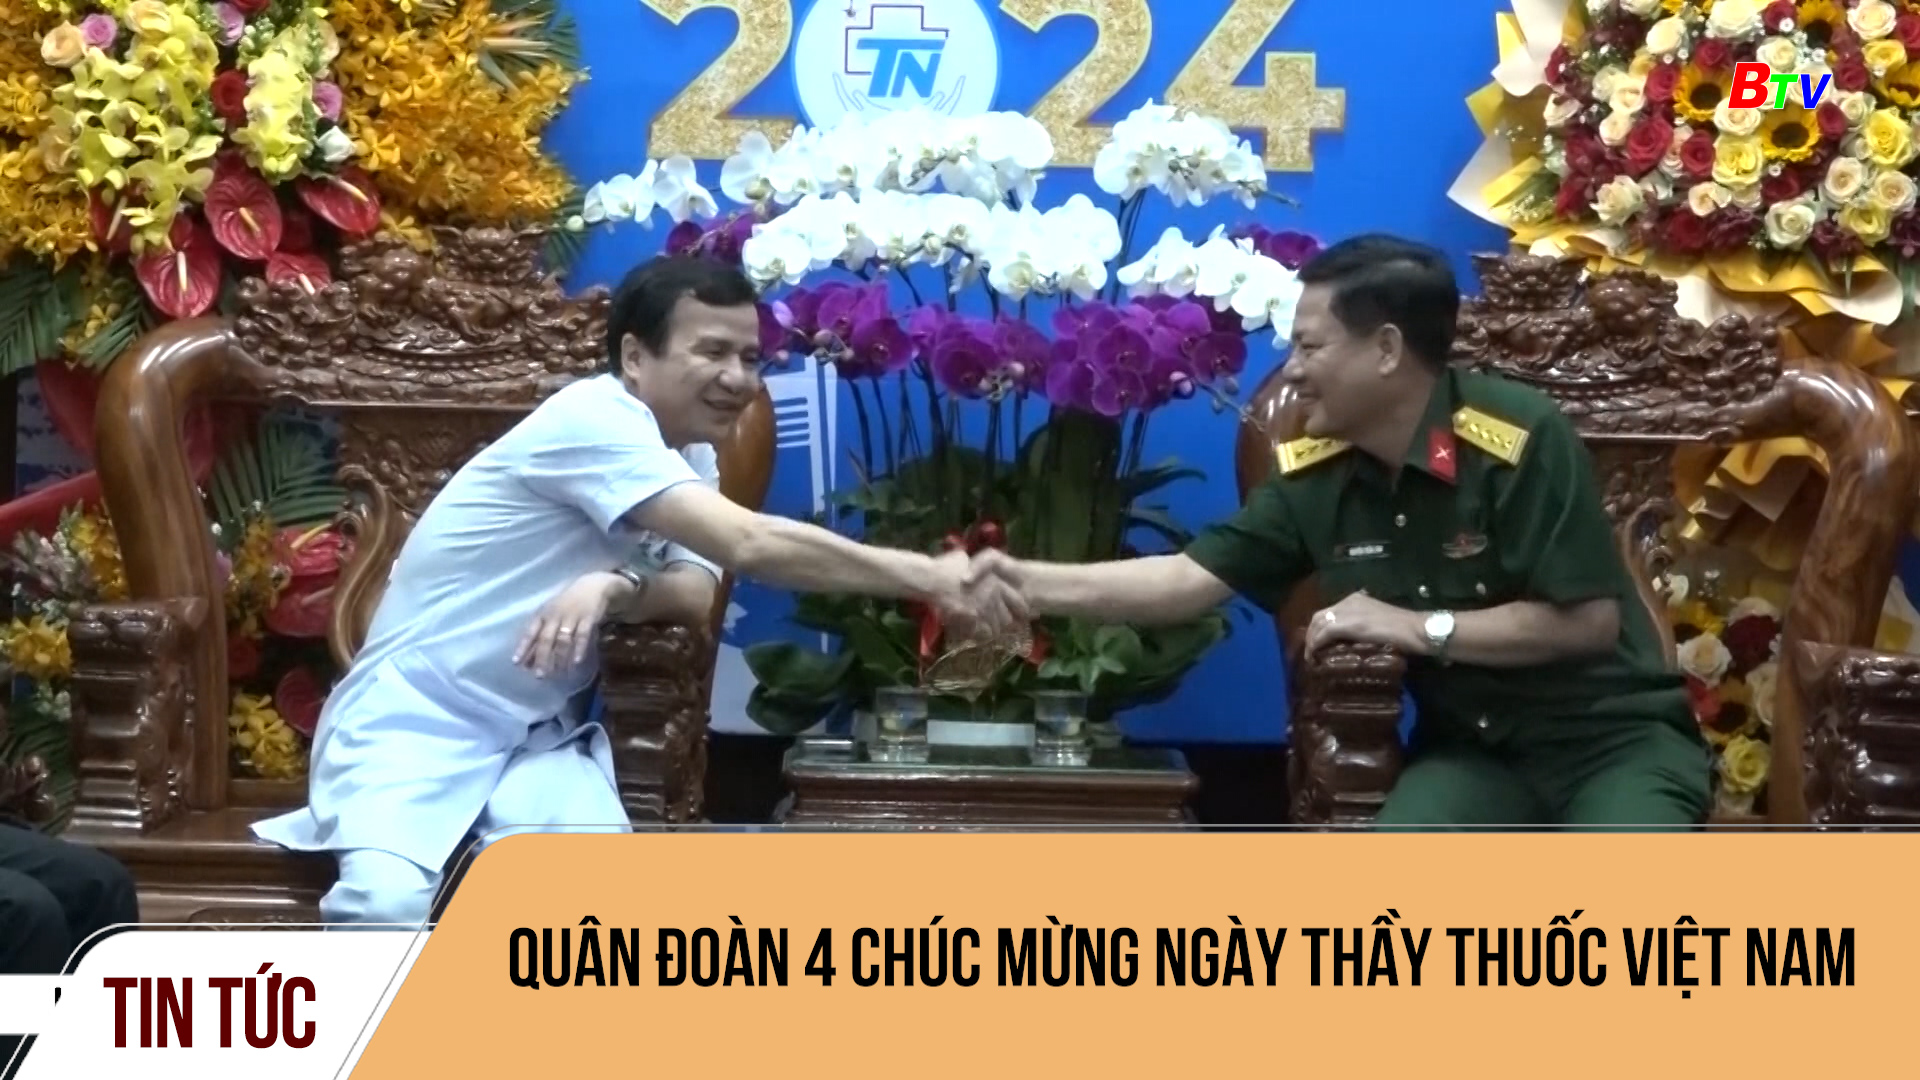 Quân đoàn 4 chúc mừng Ngày Thầy thuốc Việt Nam